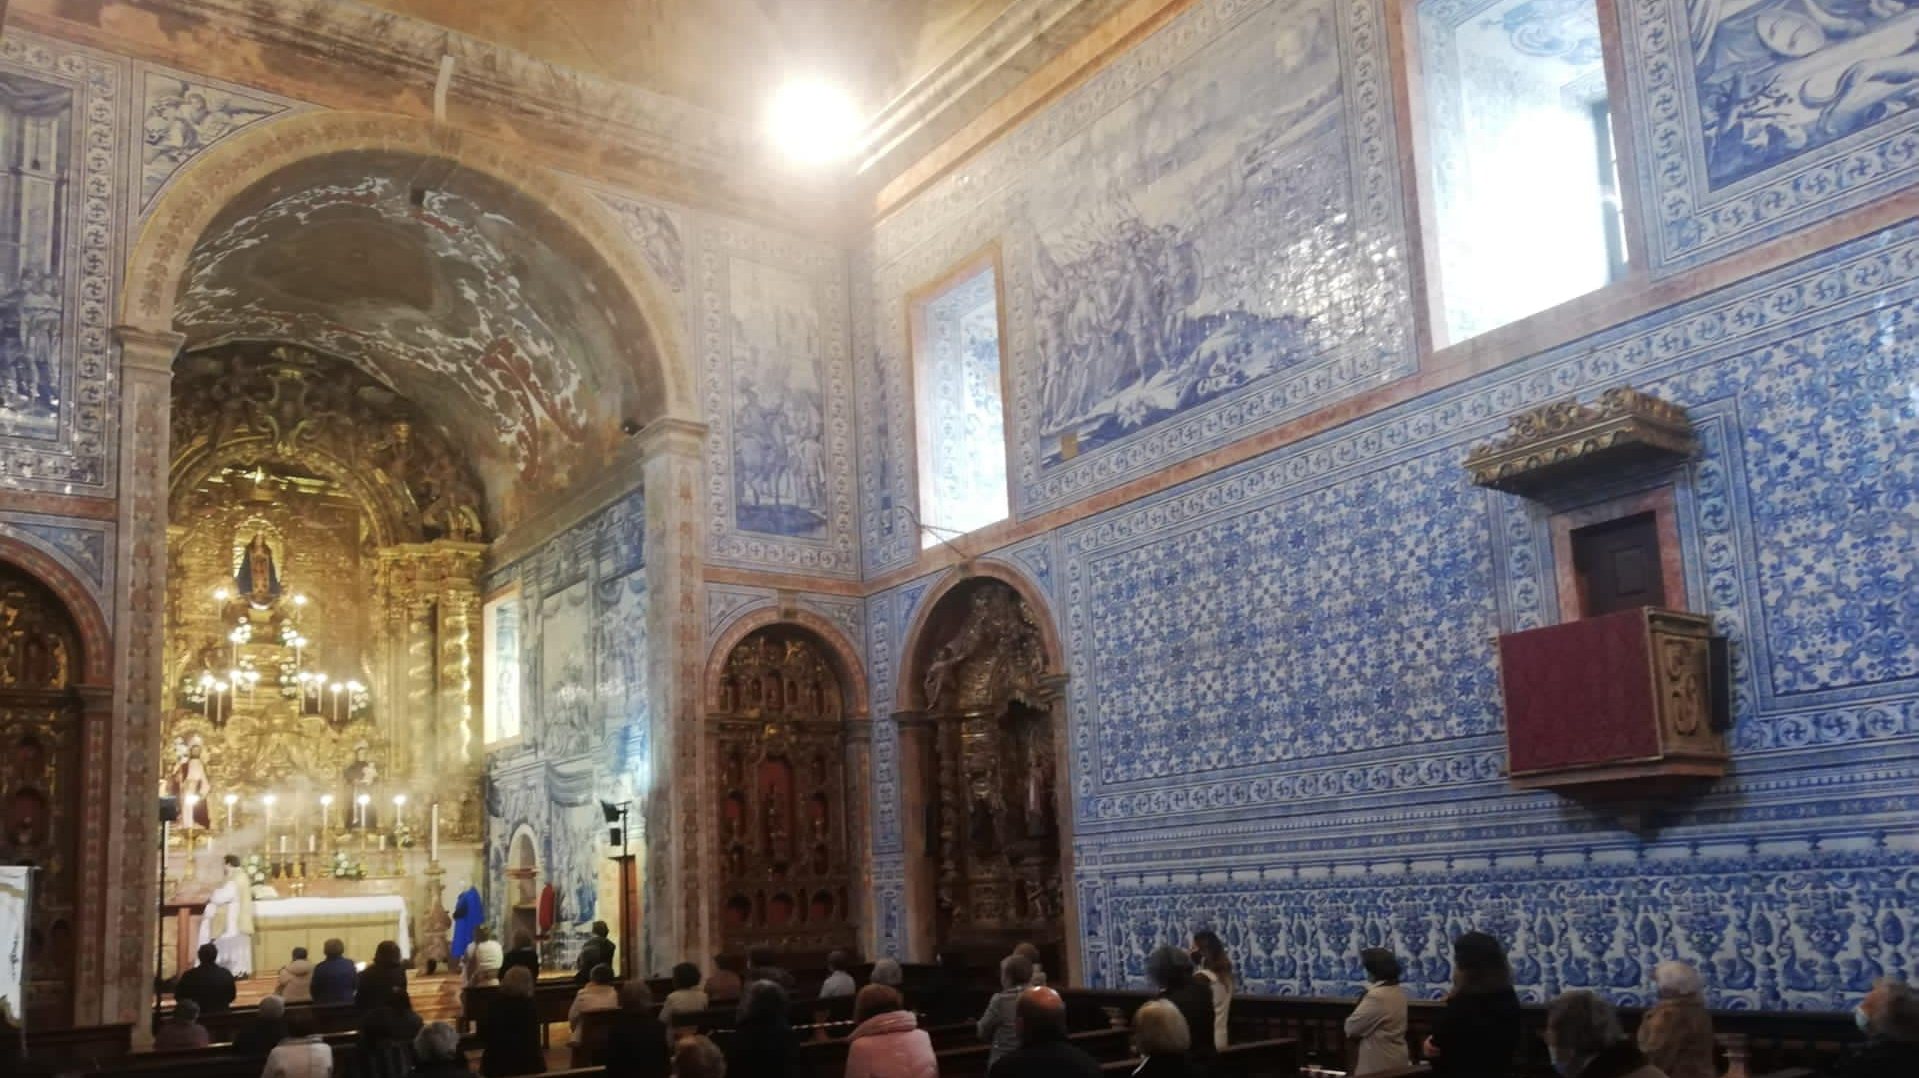 O teto pintado em madeira ilustra &quot;o milagre da Batalha de Ourique&quot; onde &quot;Cristo crucificado apareceu a D. Afonso Henriques